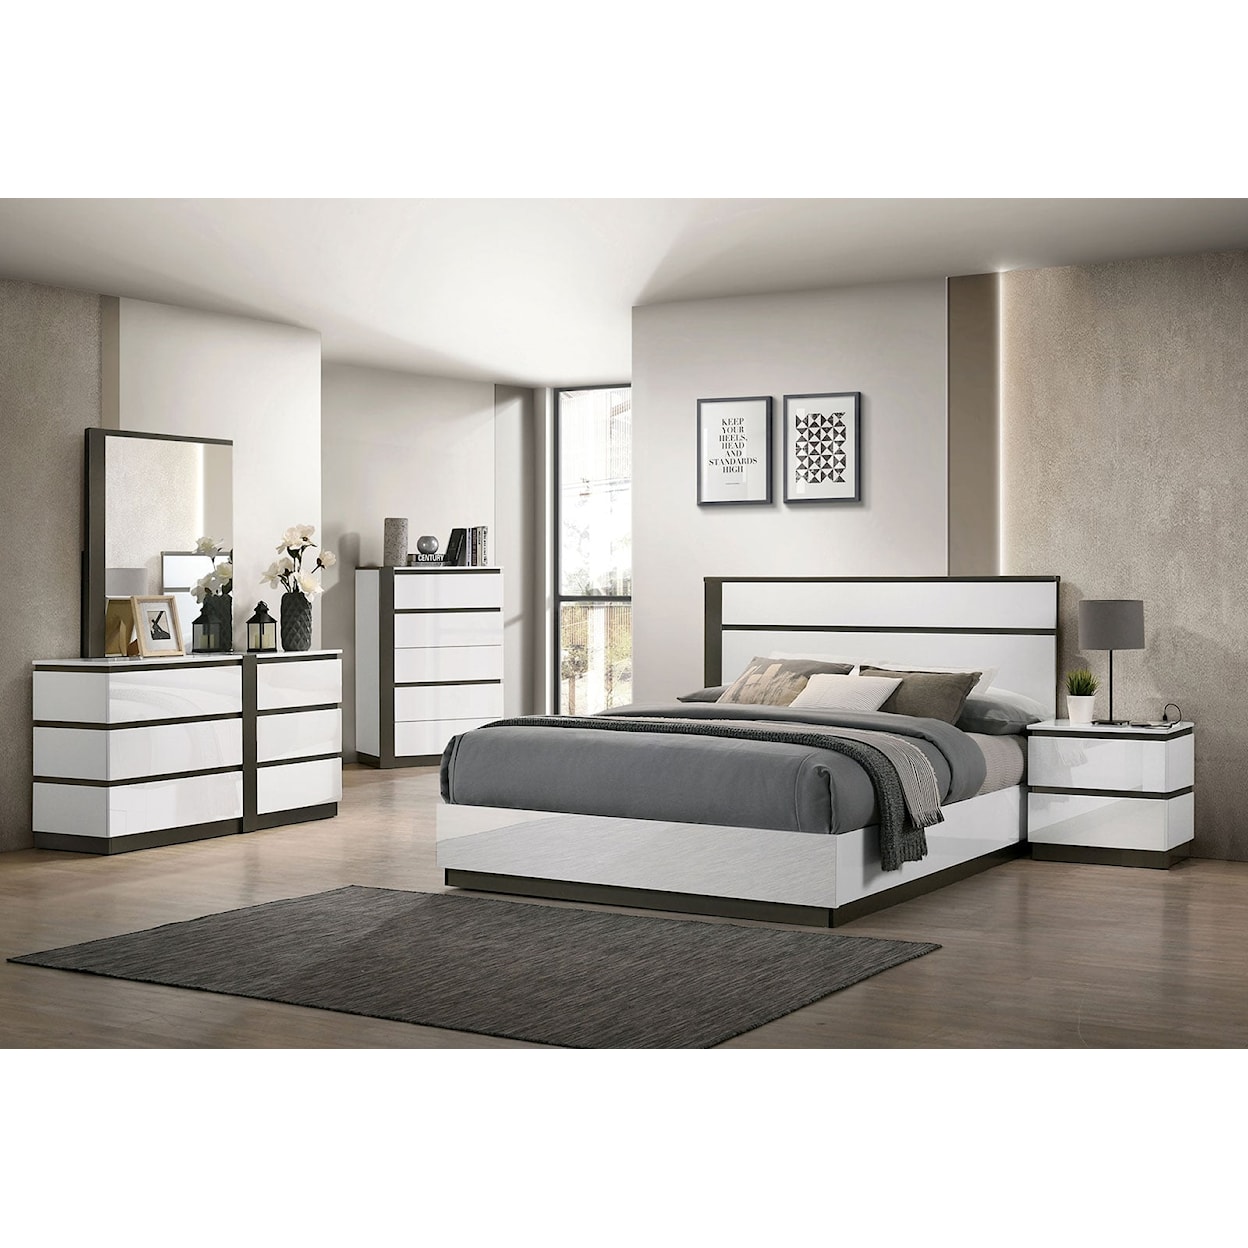 Furniture of America - FOA Birsfelden 5-Piece Queen Bedroom Set with 2 Nightstands